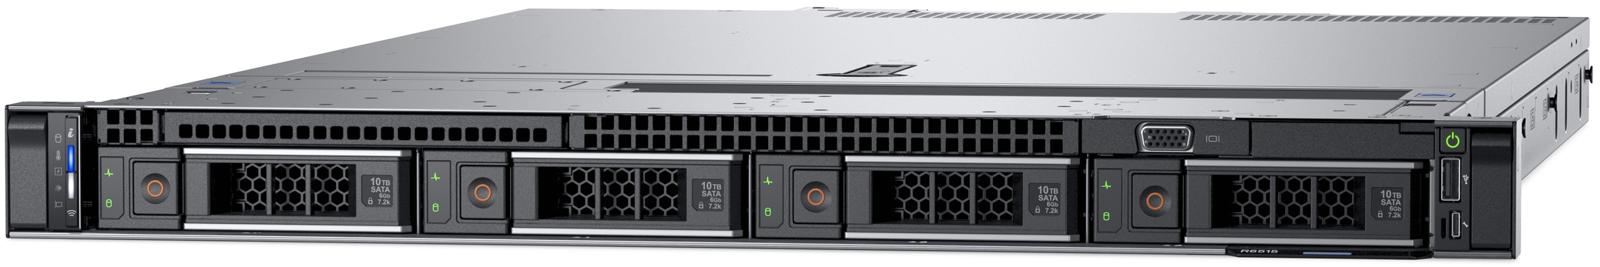 Сервер R6515 вид спереди (диски LFF)